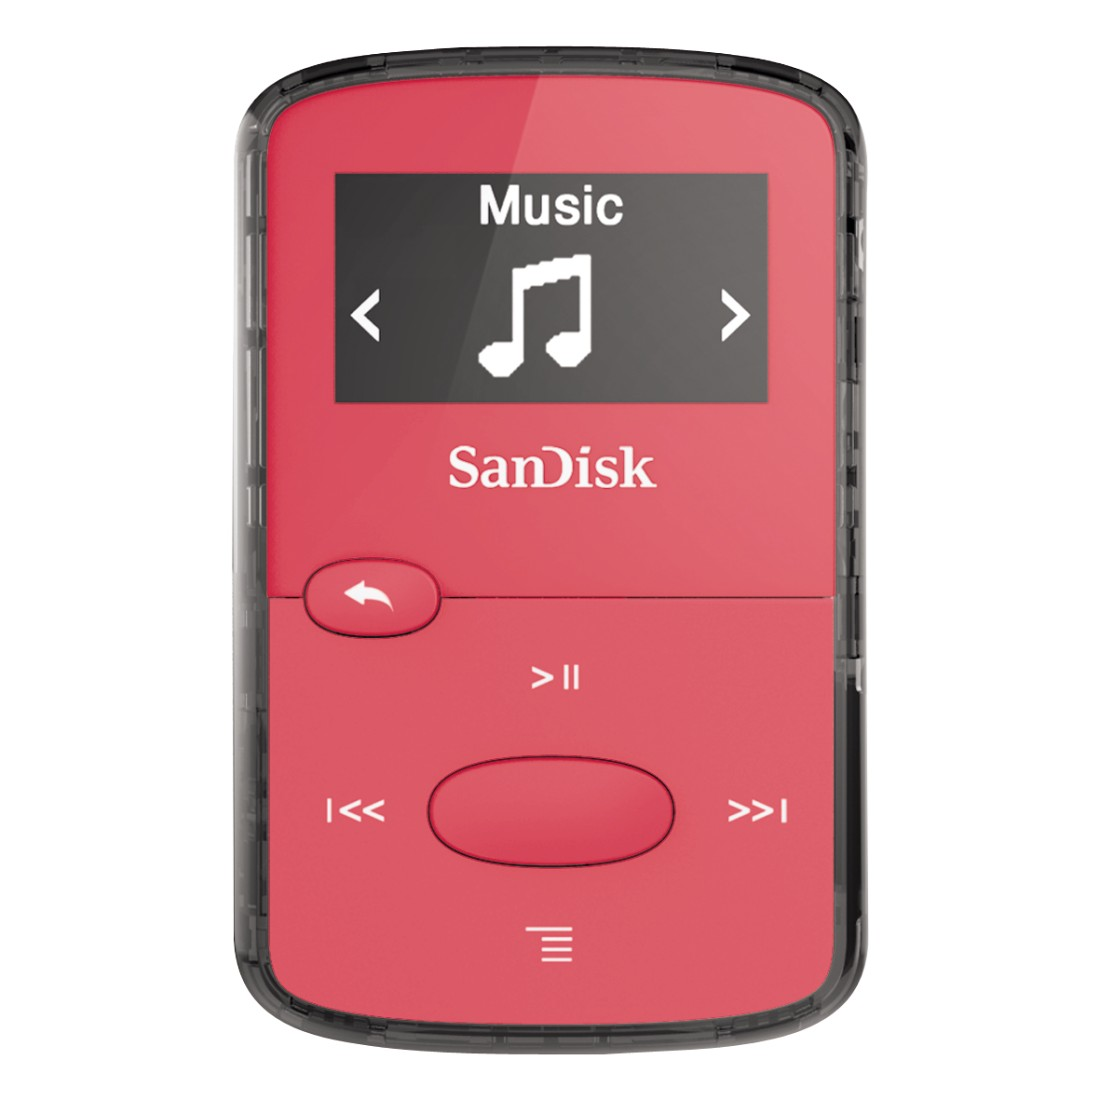 (8 SANDISK Clip Mp3-Player GB, Jam SanDisk Pink)